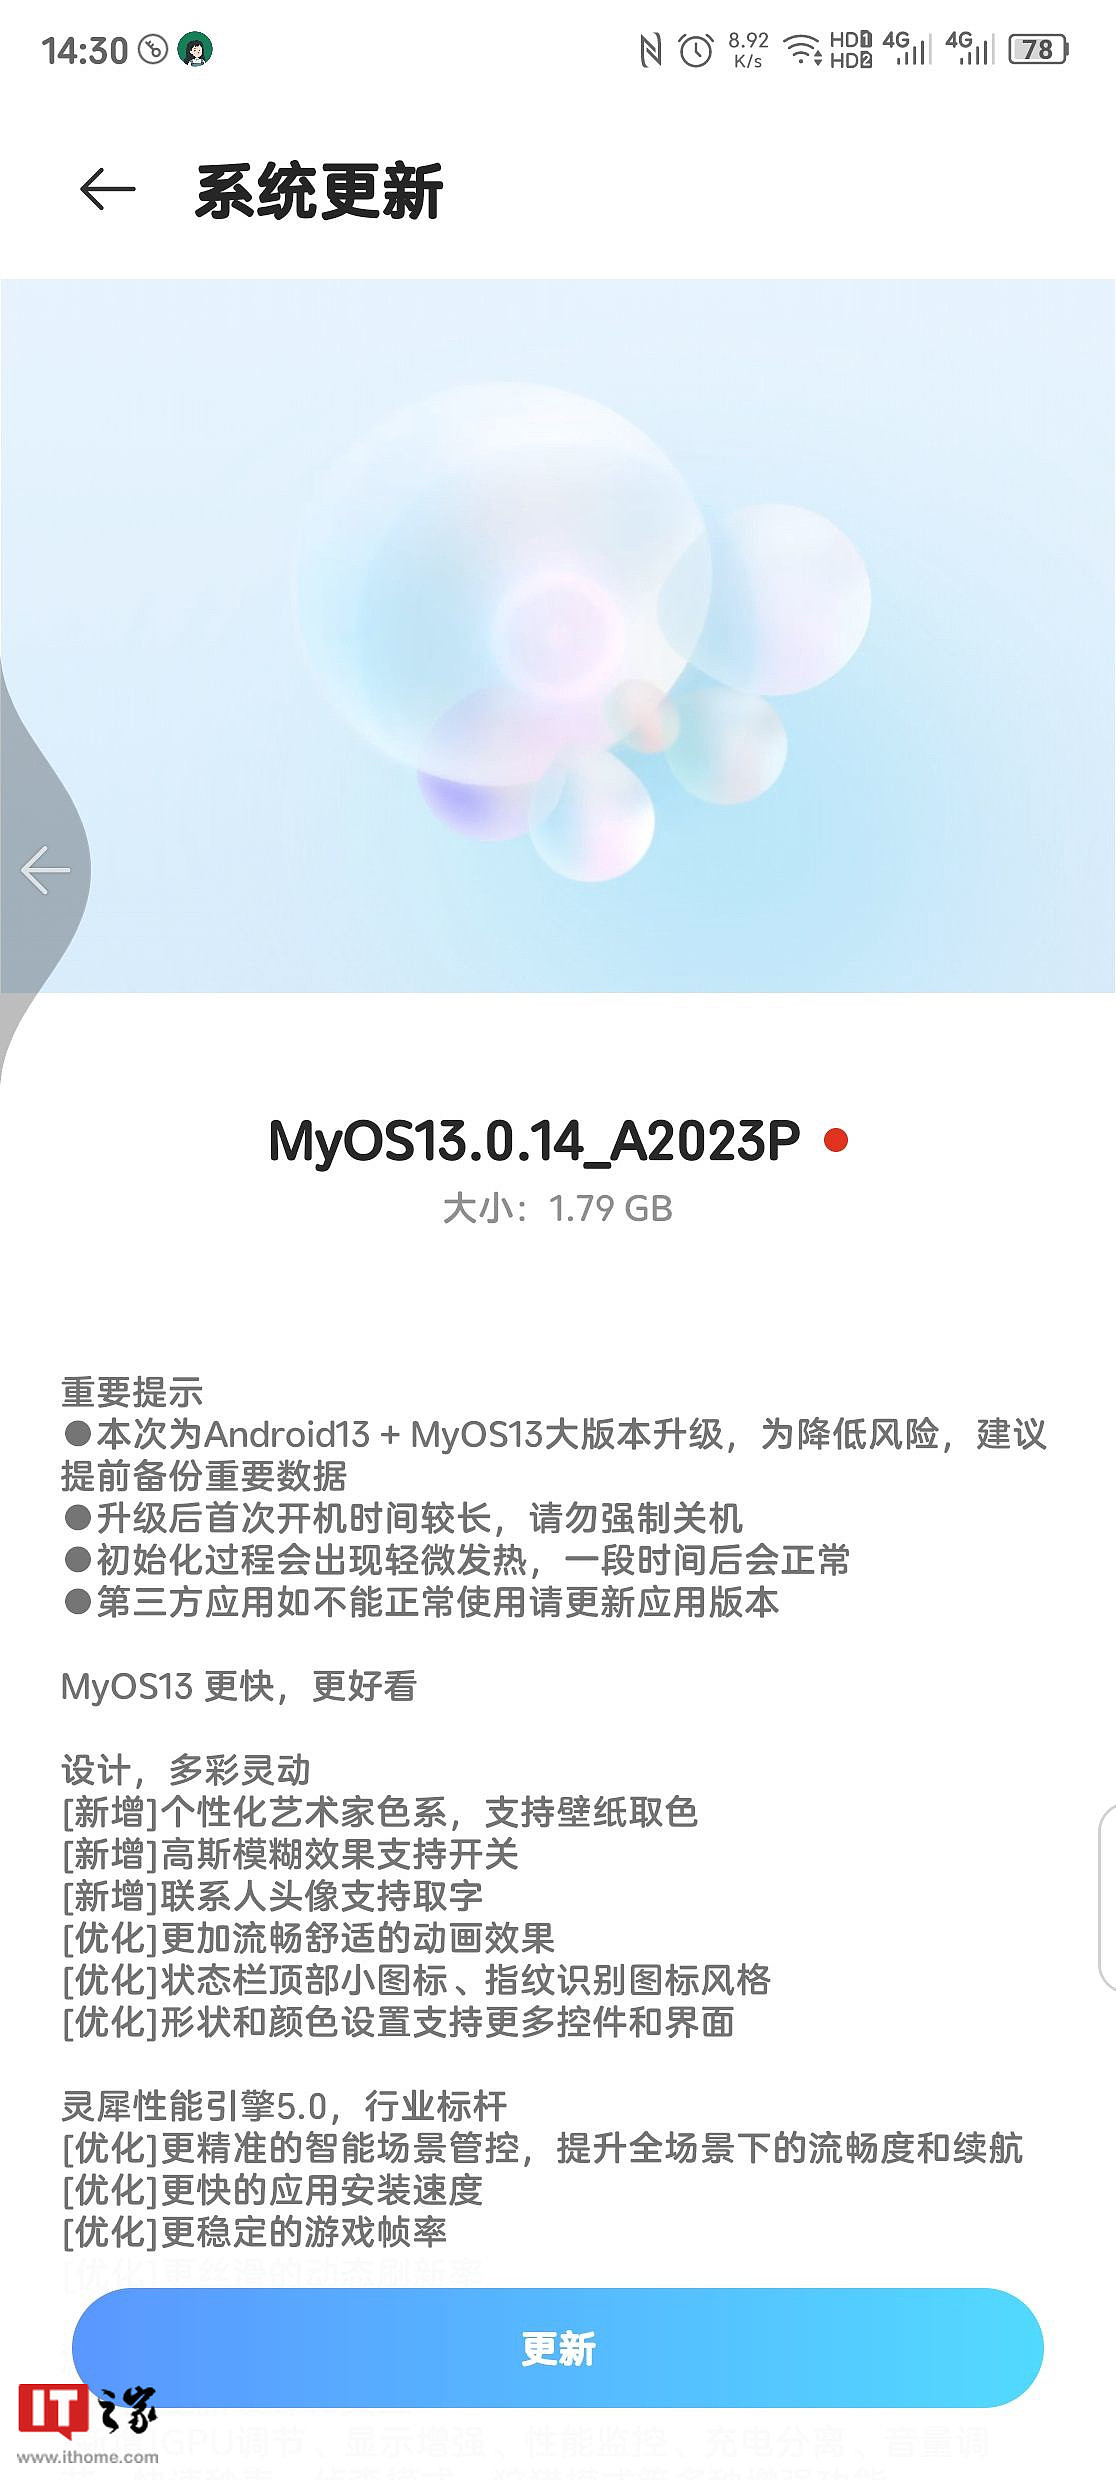 中兴 Axon 40 Ultra 手机开启安卓 13 / MyOS 13 稳定版公测：设计多彩灵动，支持灵犀性能引擎 5.0 - 1